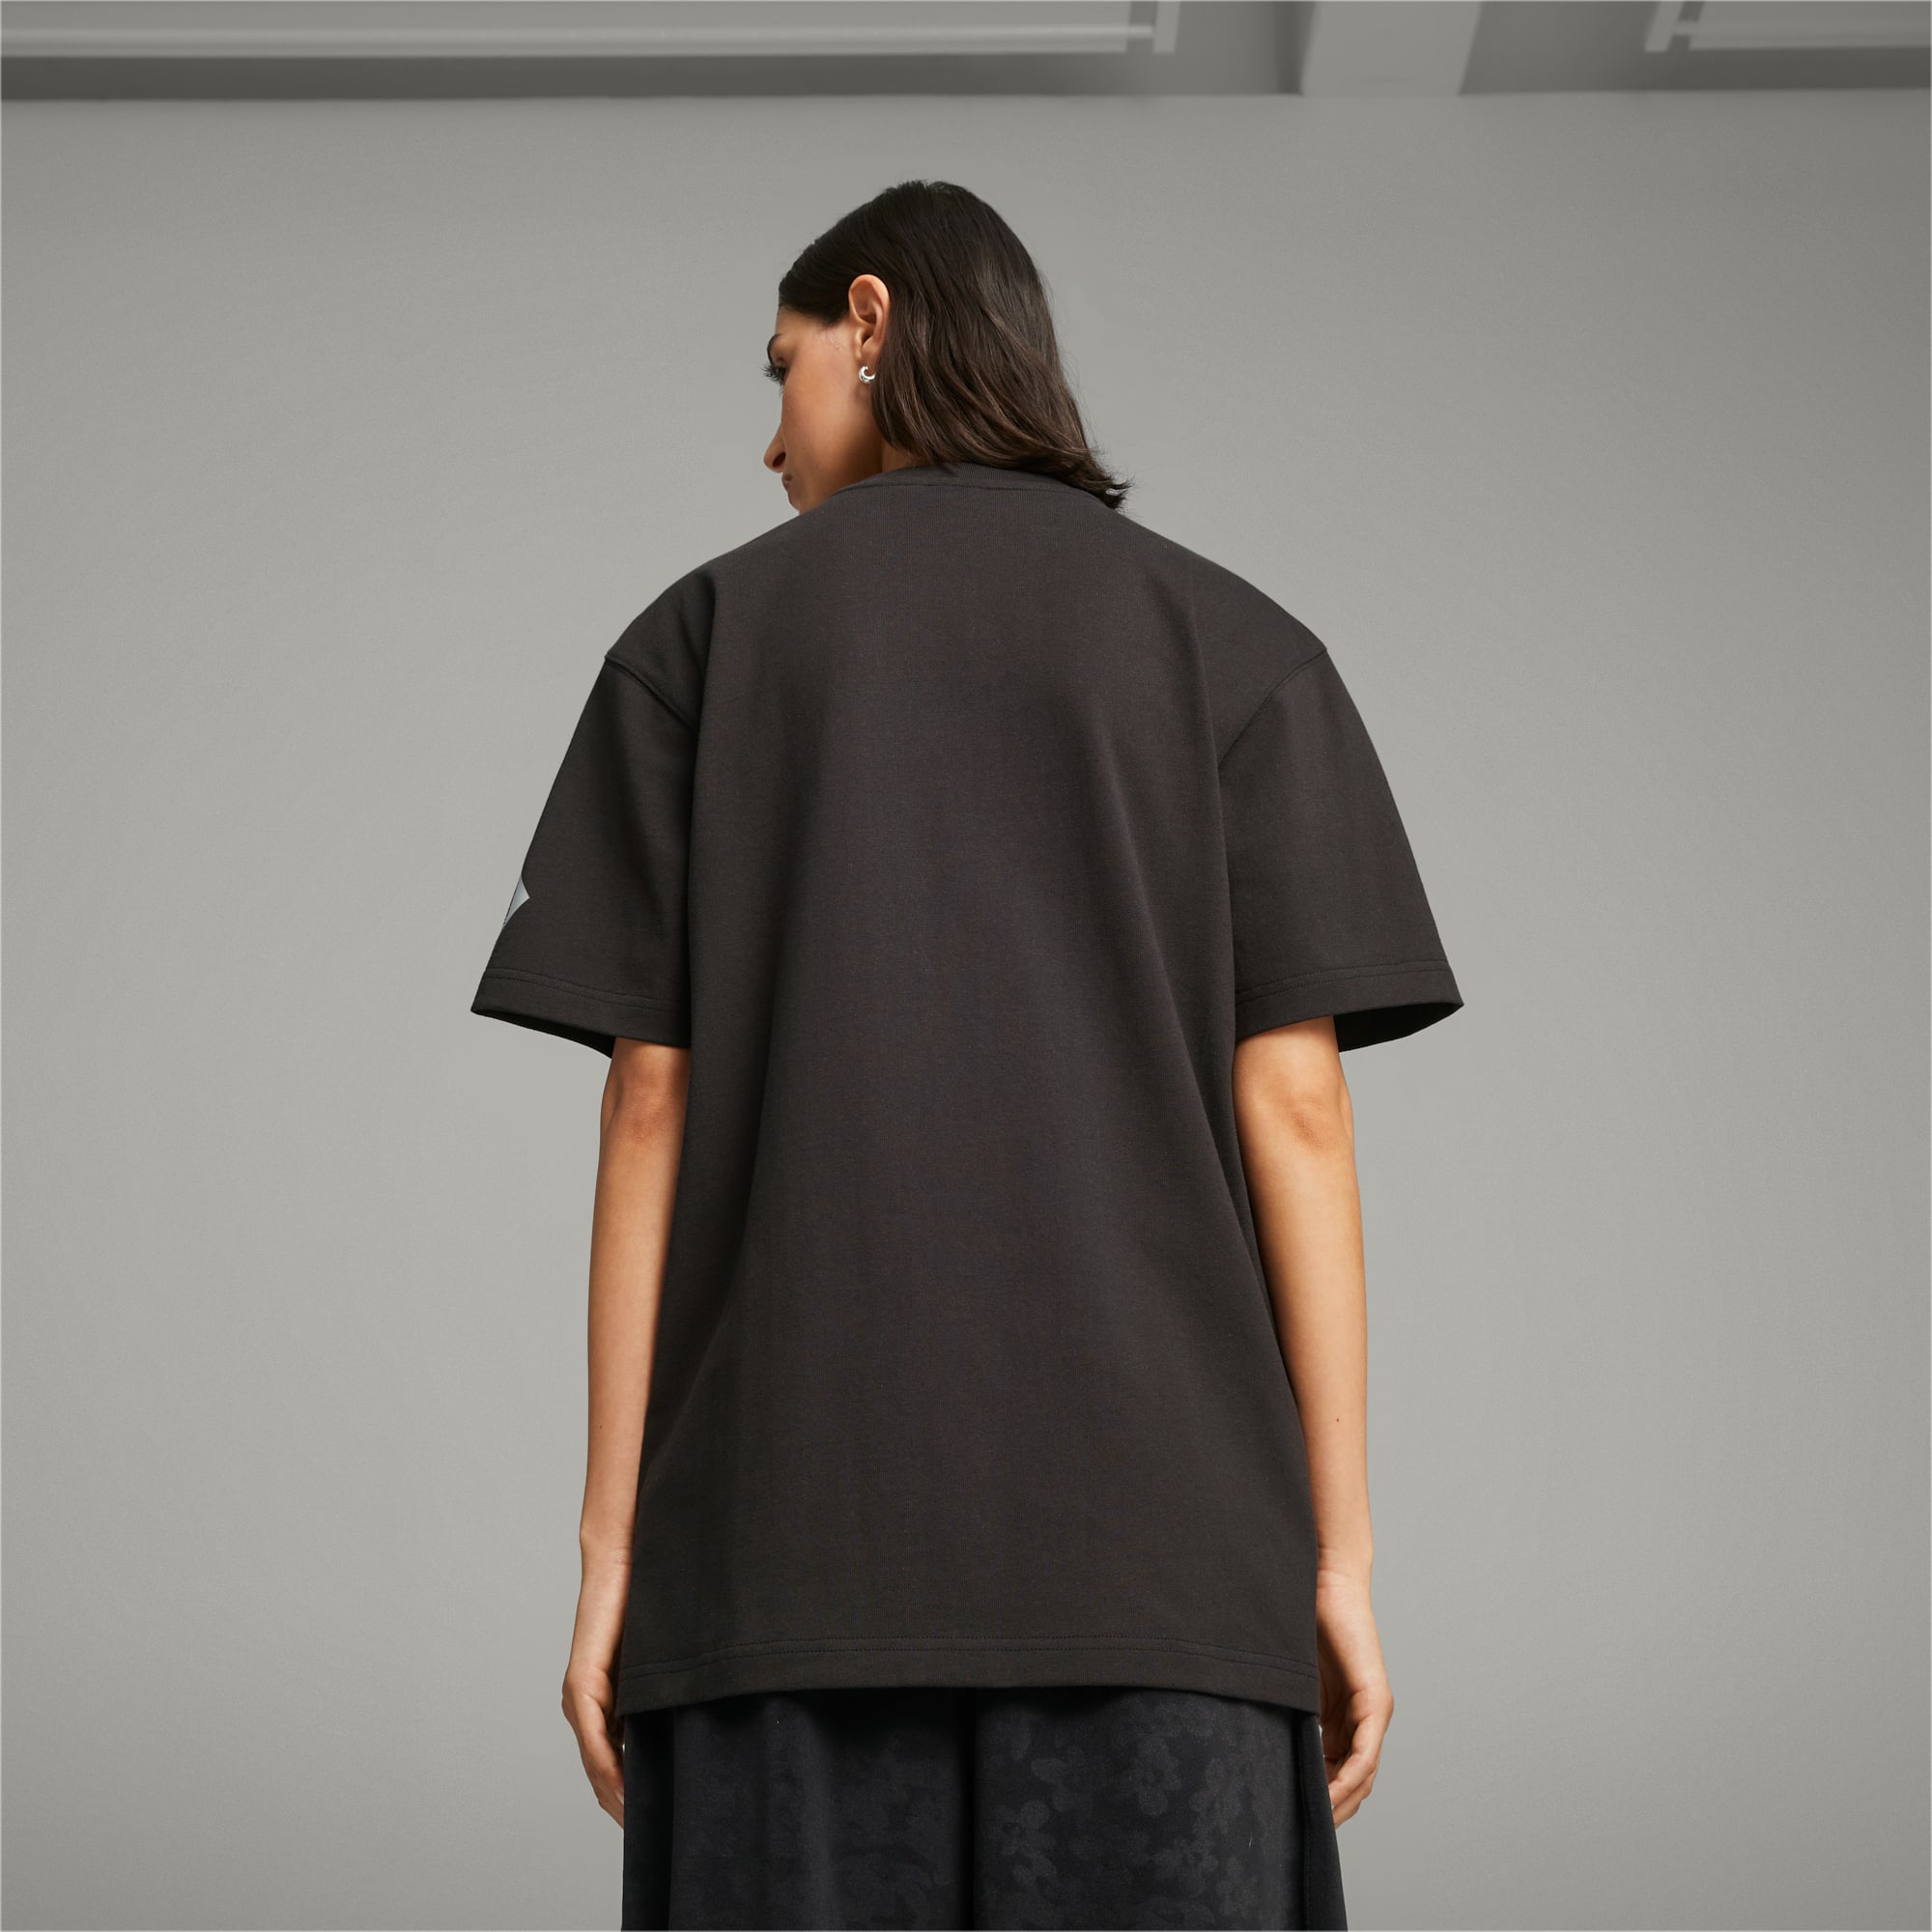 PUMA X PERKS AND MINI T-Shirt Für Herren, Schwarz, Größe: XL, Kleidung